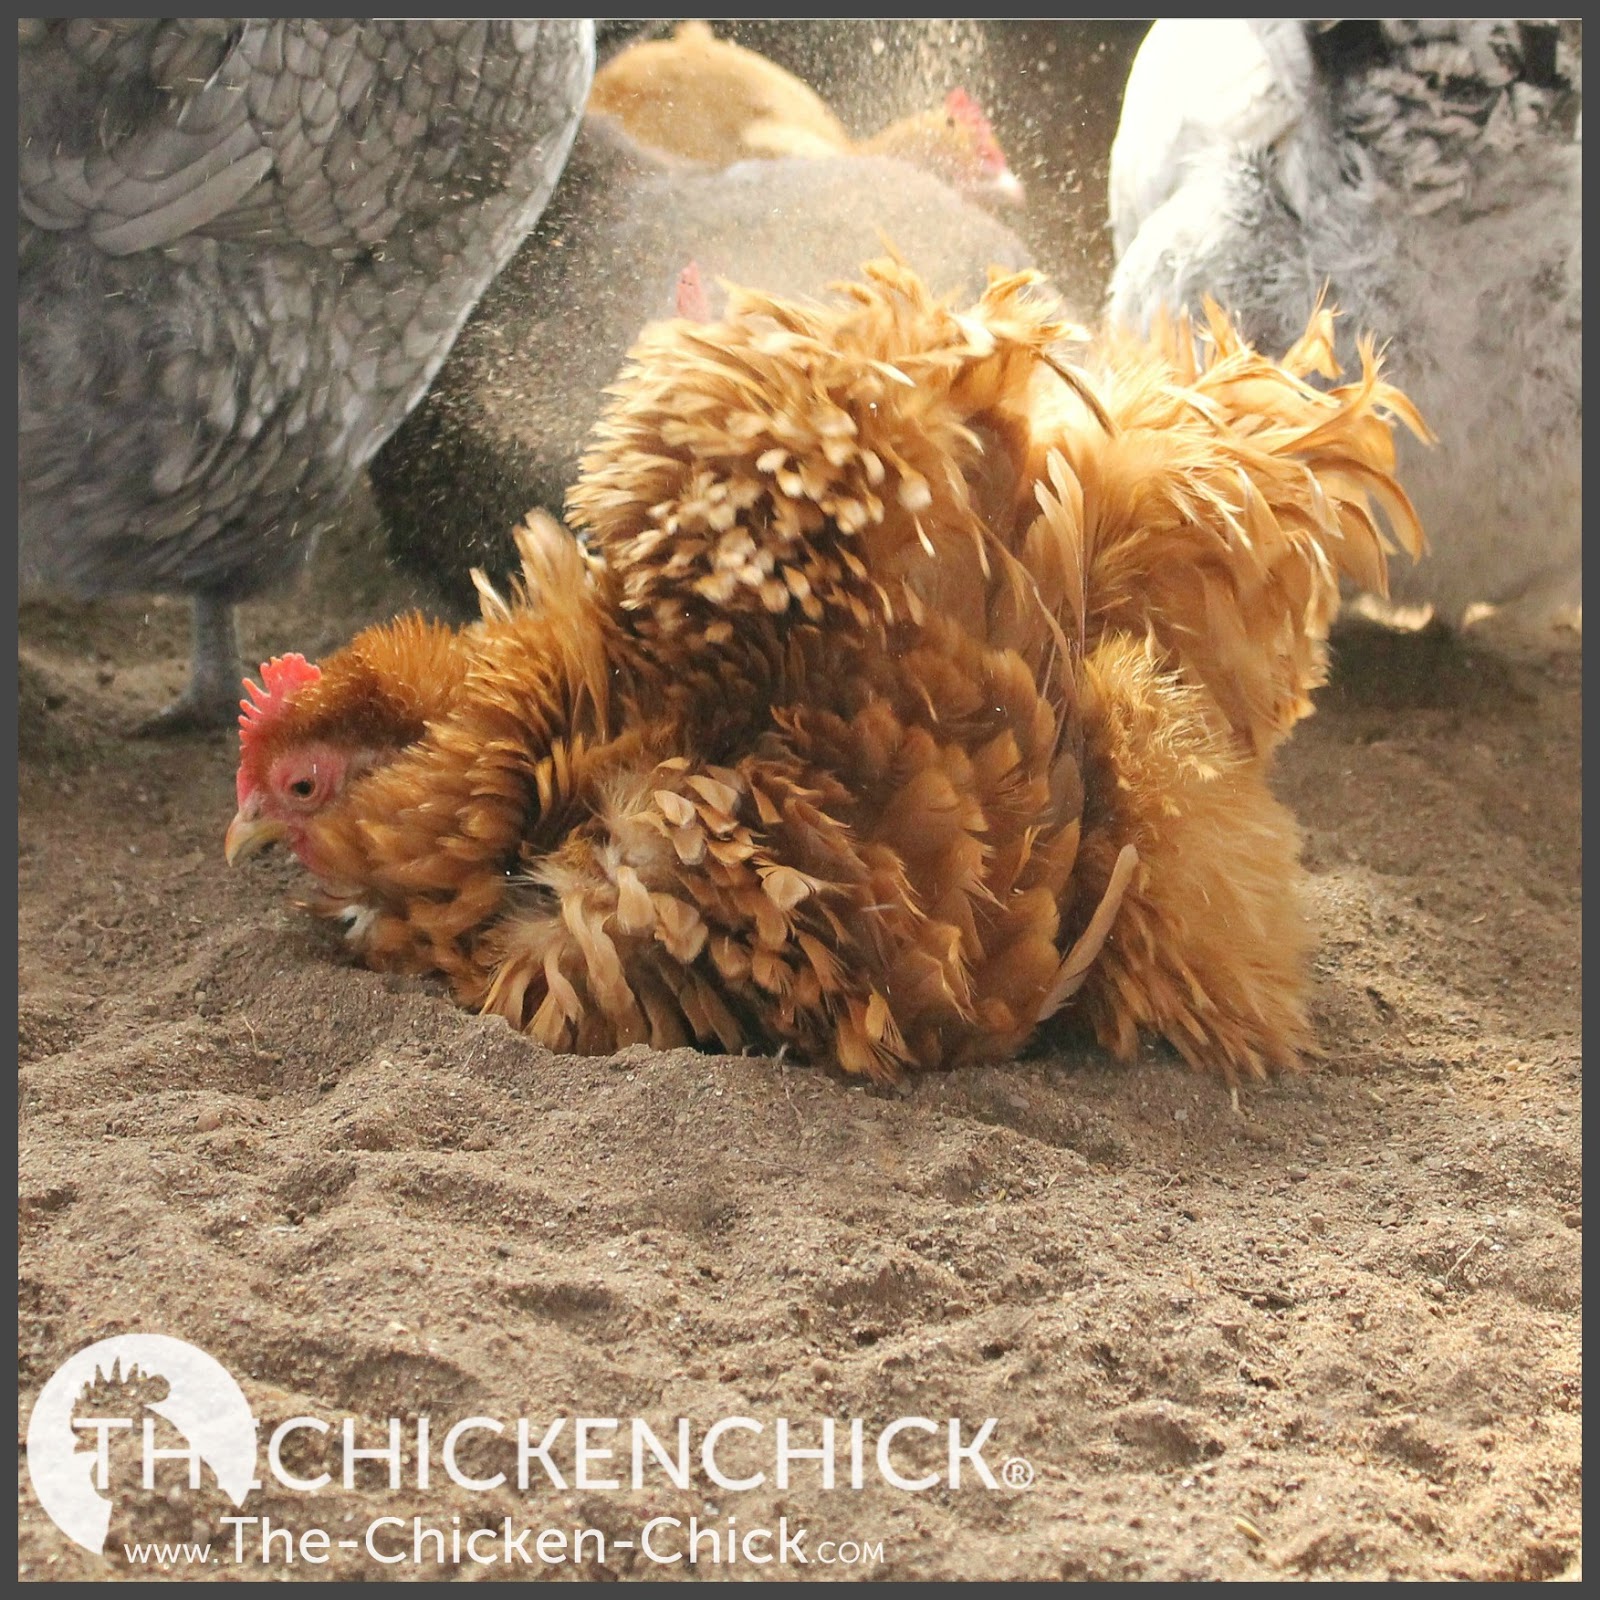 The Chicken Chick®: Chicken Coop Bedding: Sand, the Litter Superstar